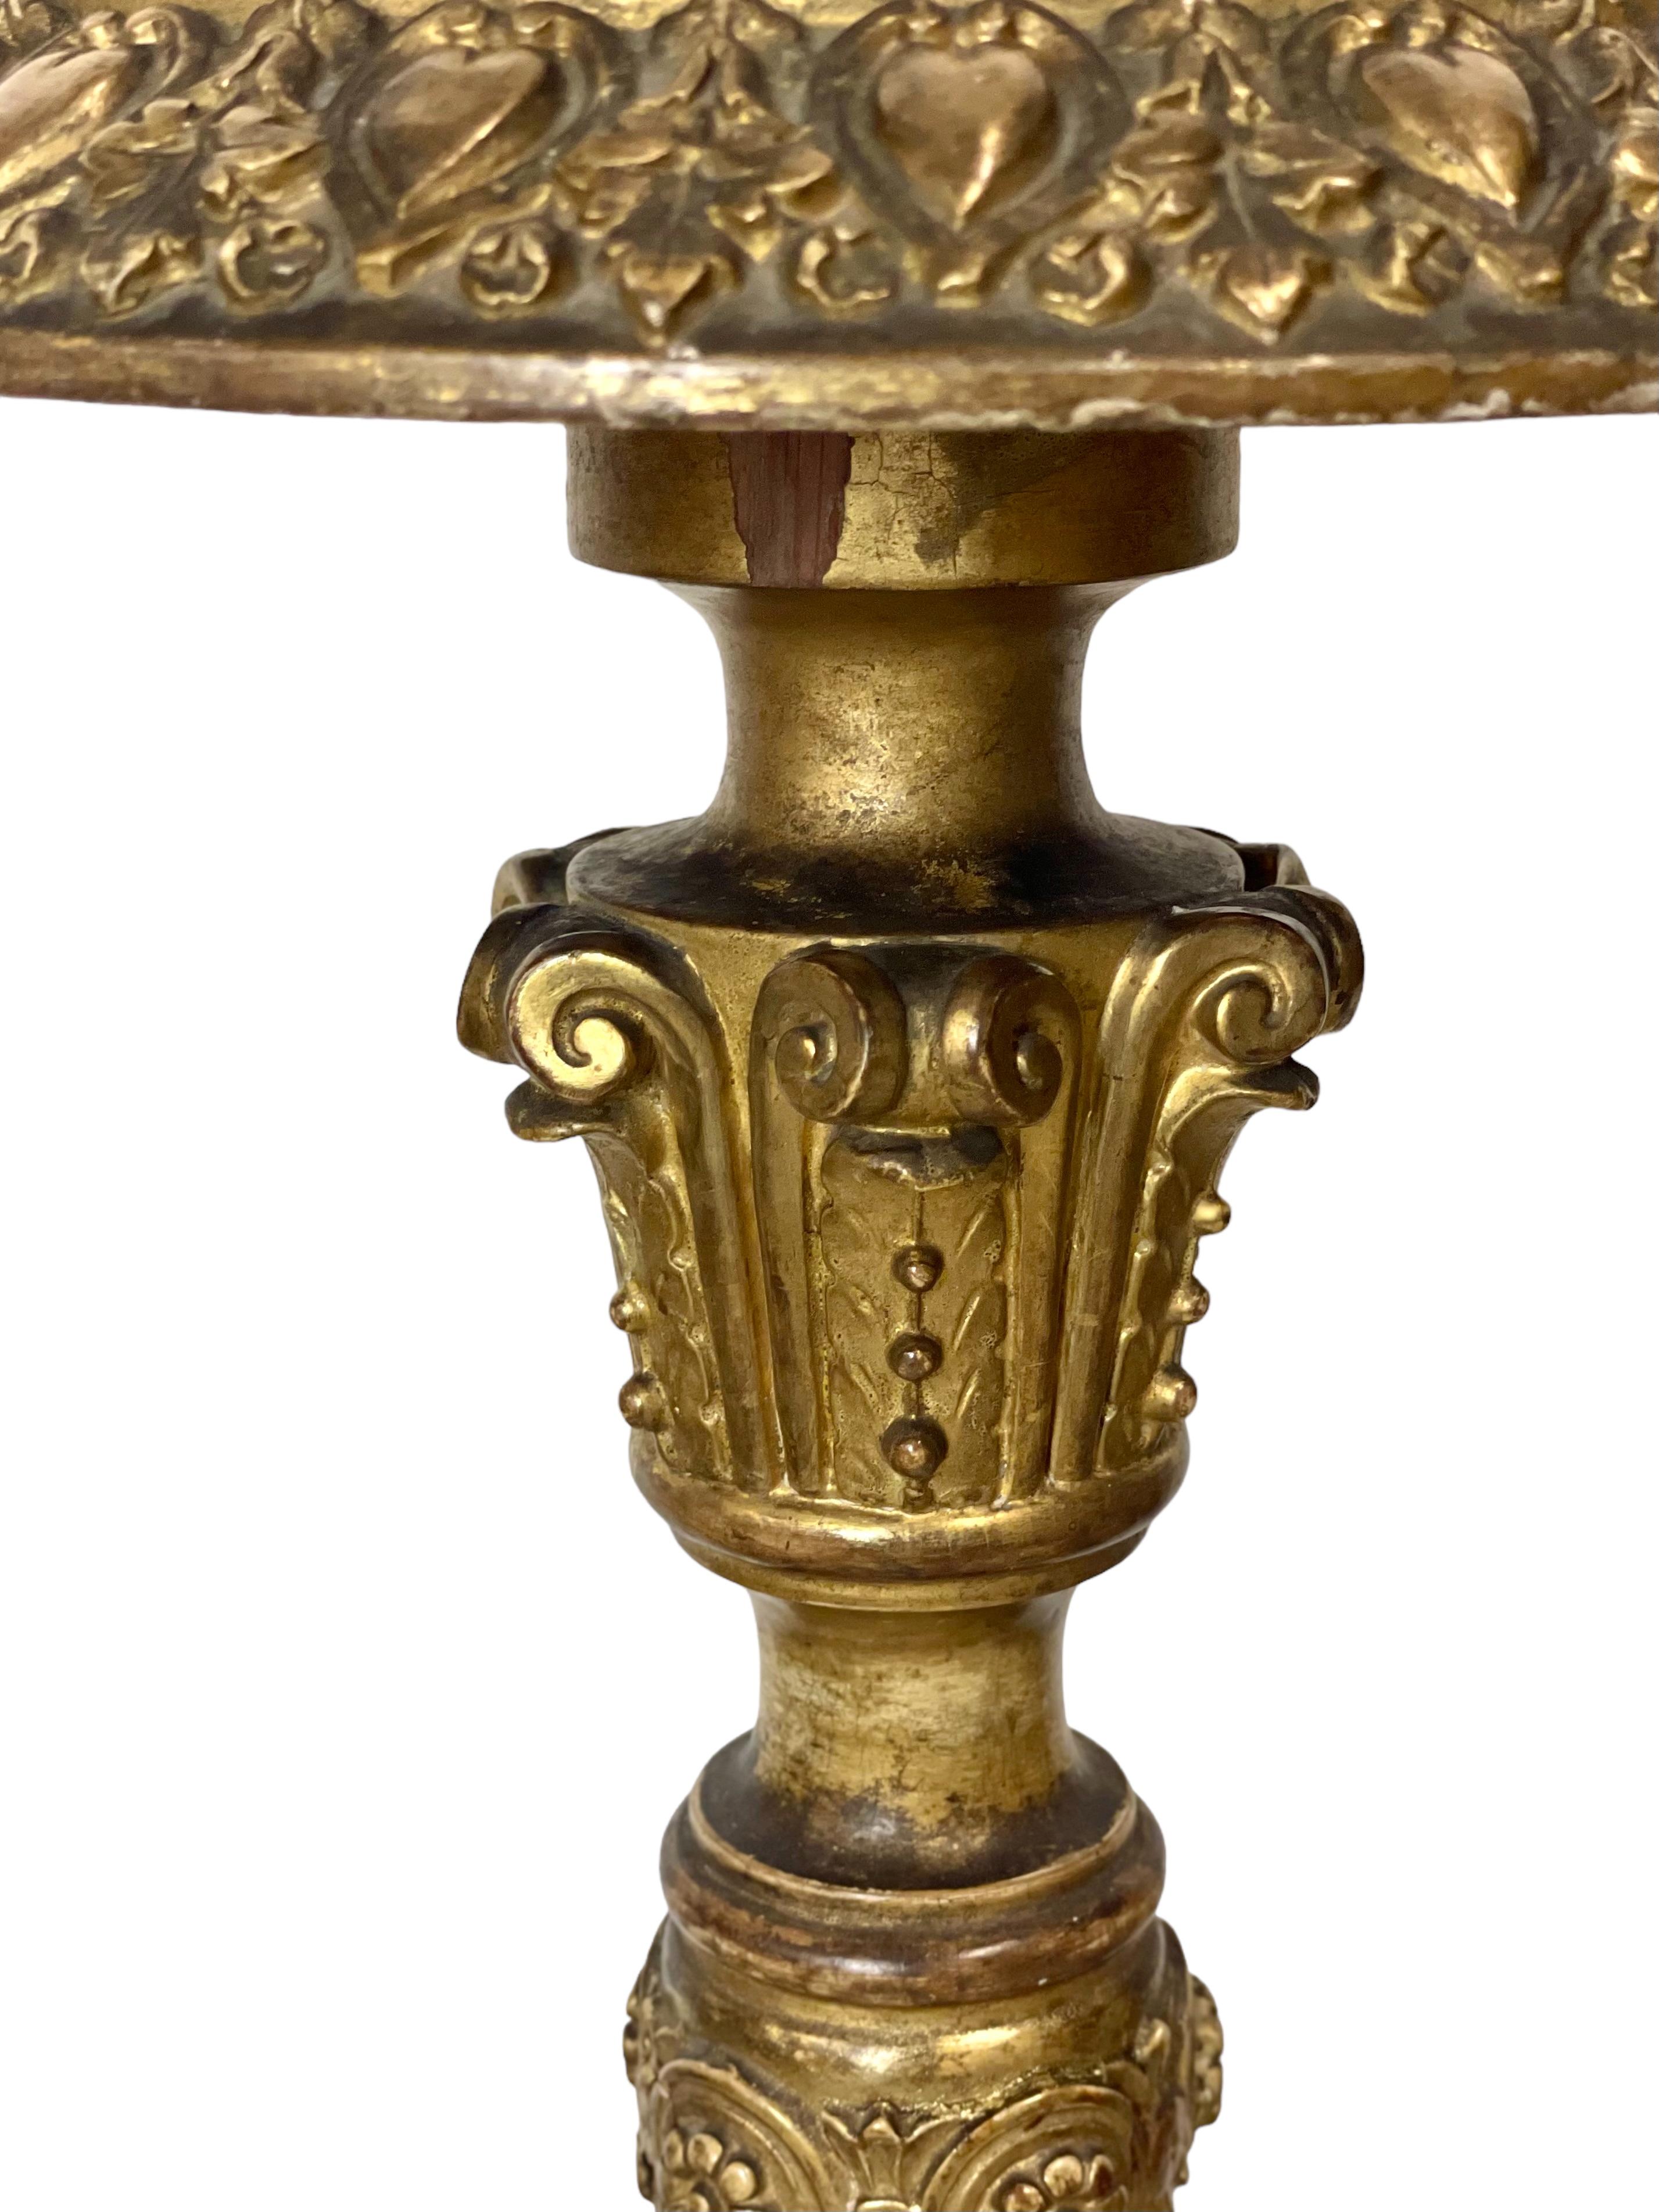 Ein antiker französischer Kerzenständer (oder 'torchère') aus kunstvoll geschnitztem, vergoldetem Holz. Diese beeindruckende Säule aus der Zeit Napoleons III. hat drei zart geschnitzte Füße, die mit Blättern und Blumen verziert sind, während die